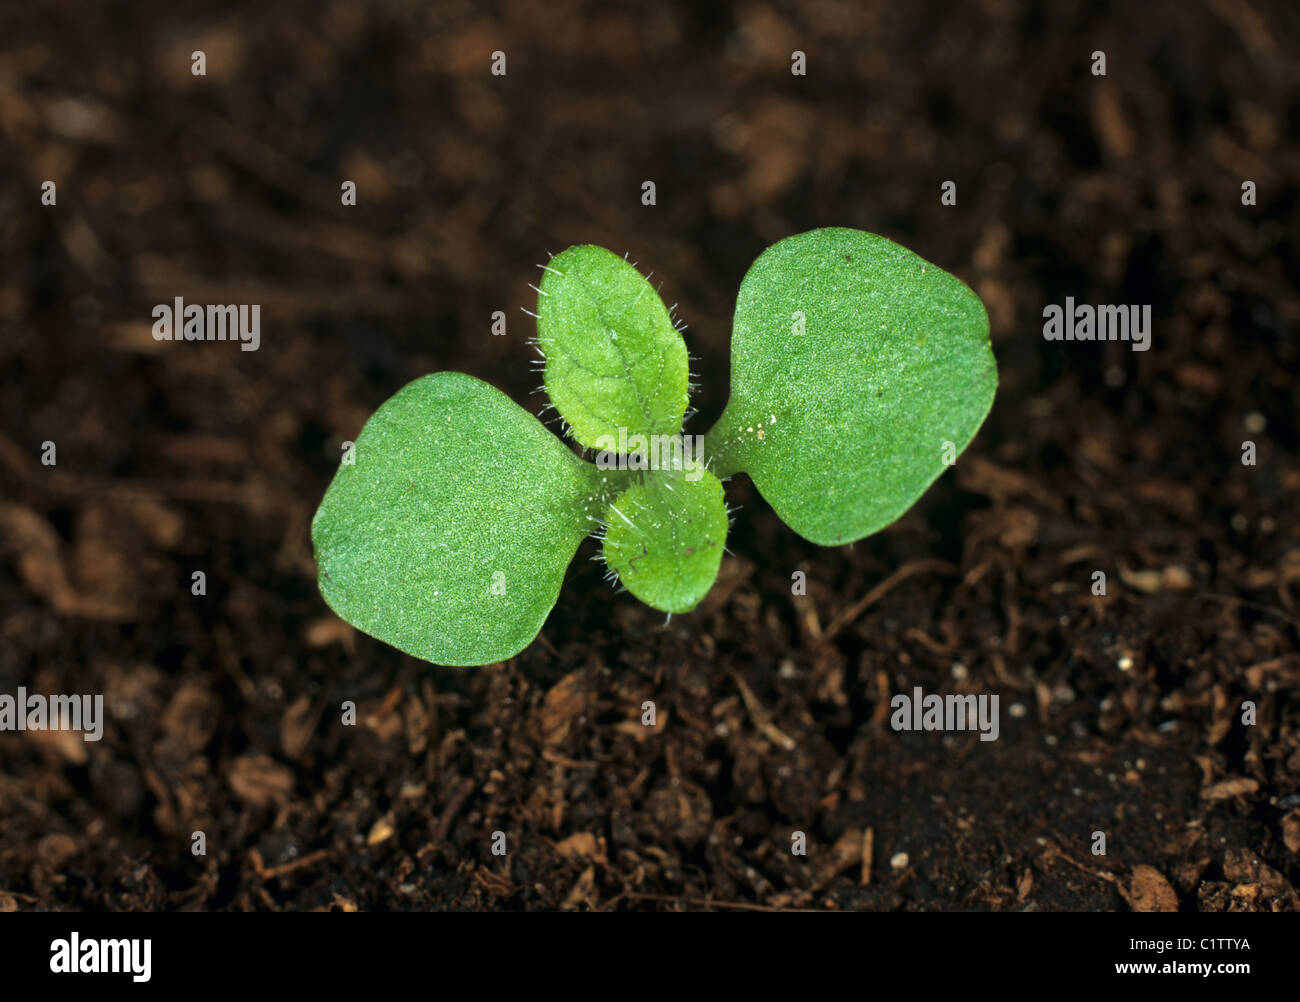 La digitale pourpre (Digitalis purpurea) cotylédons des semis avec des vraies feuilles début pour former Banque D'Images